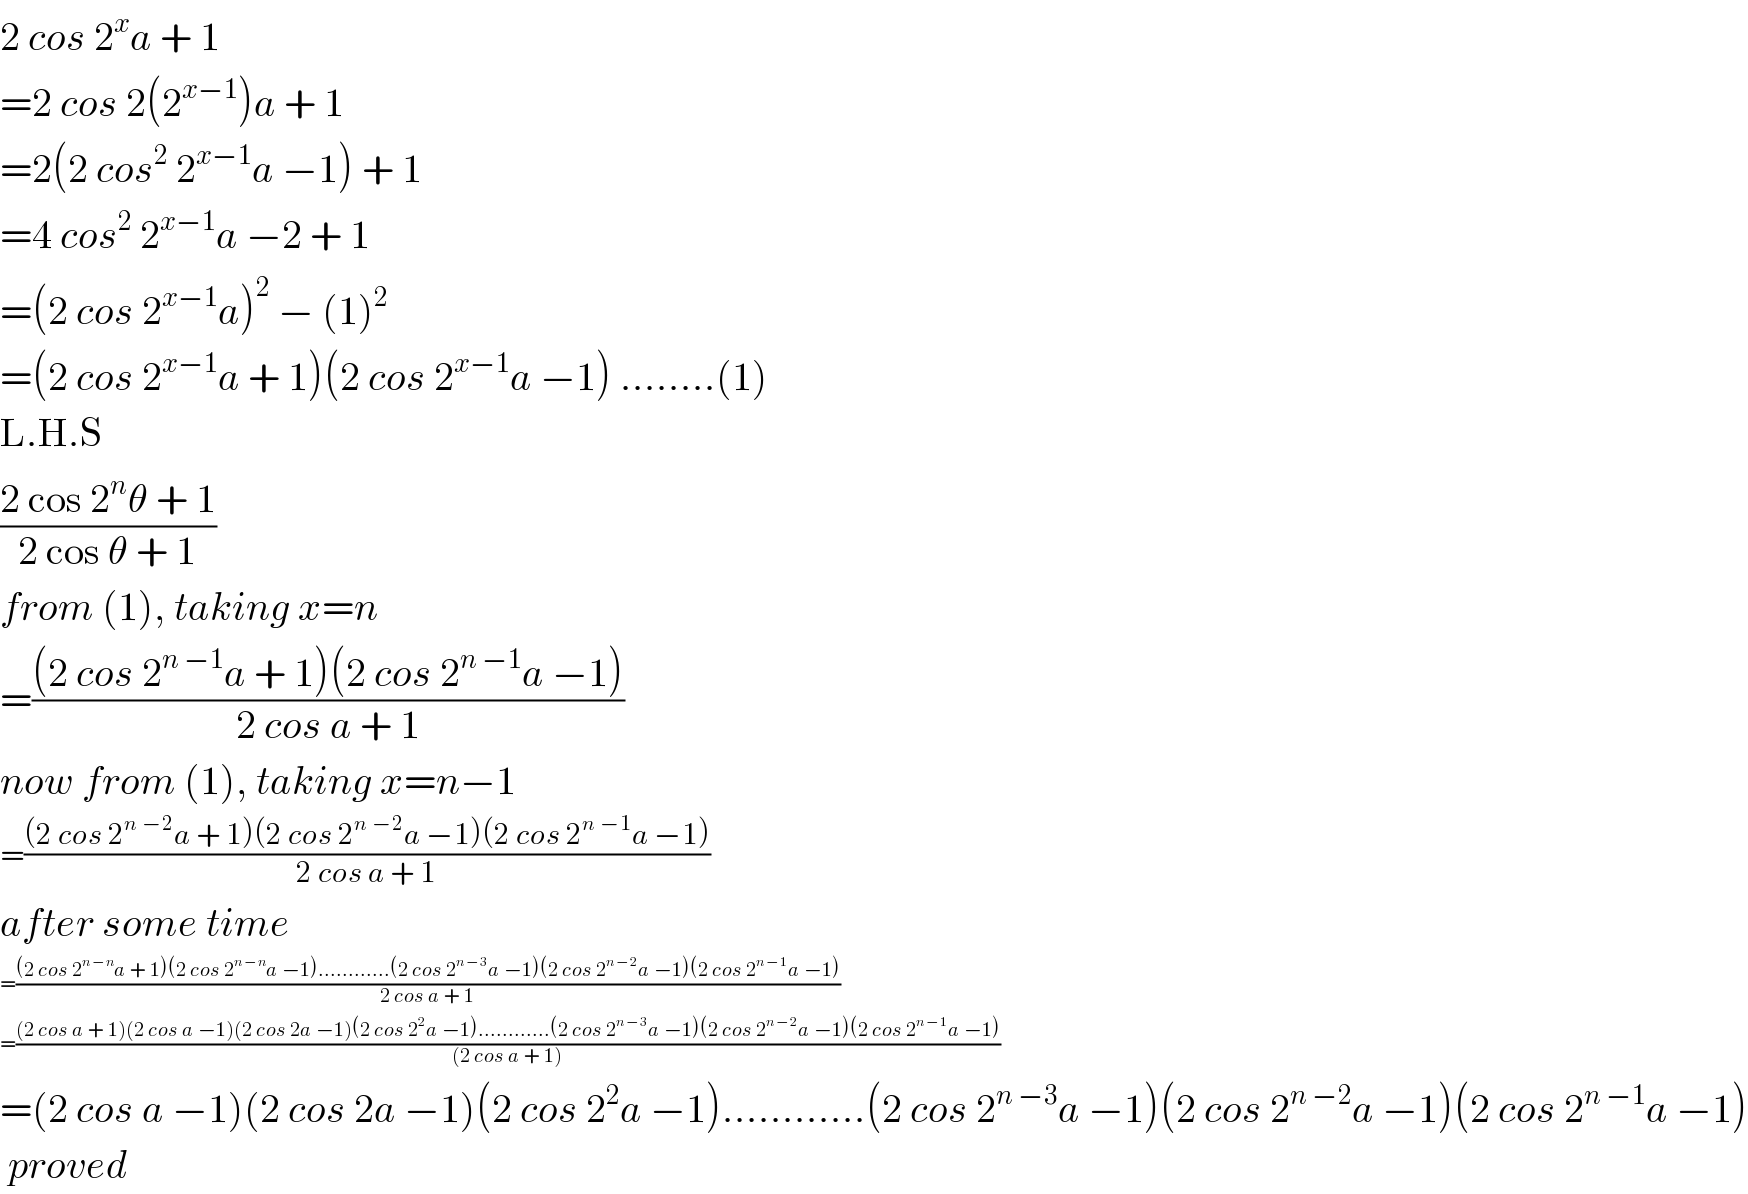 2 cos 2^x a + 1  =2 cos 2(2^(x−1) )a + 1  =2(2 cos^2  2^(x−1) a −1) + 1  =4 cos^2  2^(x−1) a −2 + 1  =(2 cos 2^(x−1) a)^2  − (1)^2   =(2 cos 2^(x−1) a + 1)(2 cos 2^(x−1) a −1) ........(1)  L.H.S  ((2 cos 2^n θ + 1)/(2 cos θ + 1))  from (1), taking x=n  =(((2 cos 2^(n −1) a + 1)(2 cos 2^(n −1) a −1))/(2 cos a + 1))  now from (1), taking x=n−1  =(((2 cos 2^(n −2) a + 1)(2 cos 2^(n −2) a −1)(2 cos 2^(n −1) a −1))/(2 cos a + 1))  after some time  =(((2 cos 2^(n −n) a + 1)(2 cos 2^(n −n) a −1)............(2 cos 2^(n −3) a −1)(2 cos 2^(n −2) a −1)(2 cos 2^(n −1) a −1))/(2 cos a + 1))  =(((2 cos a + 1)(2 cos a −1)(2 cos 2a −1)(2 cos 2^2 a −1)............(2 cos 2^(n −3) a −1)(2 cos 2^(n −2) a −1)(2 cos 2^(n −1) a −1))/((2 cos a + 1)))  =(2 cos a −1)(2 cos 2a −1)(2 cos 2^2 a −1)............(2 cos 2^(n −3) a −1)(2 cos 2^(n −2) a −1)(2 cos 2^(n −1) a −1)   proved  